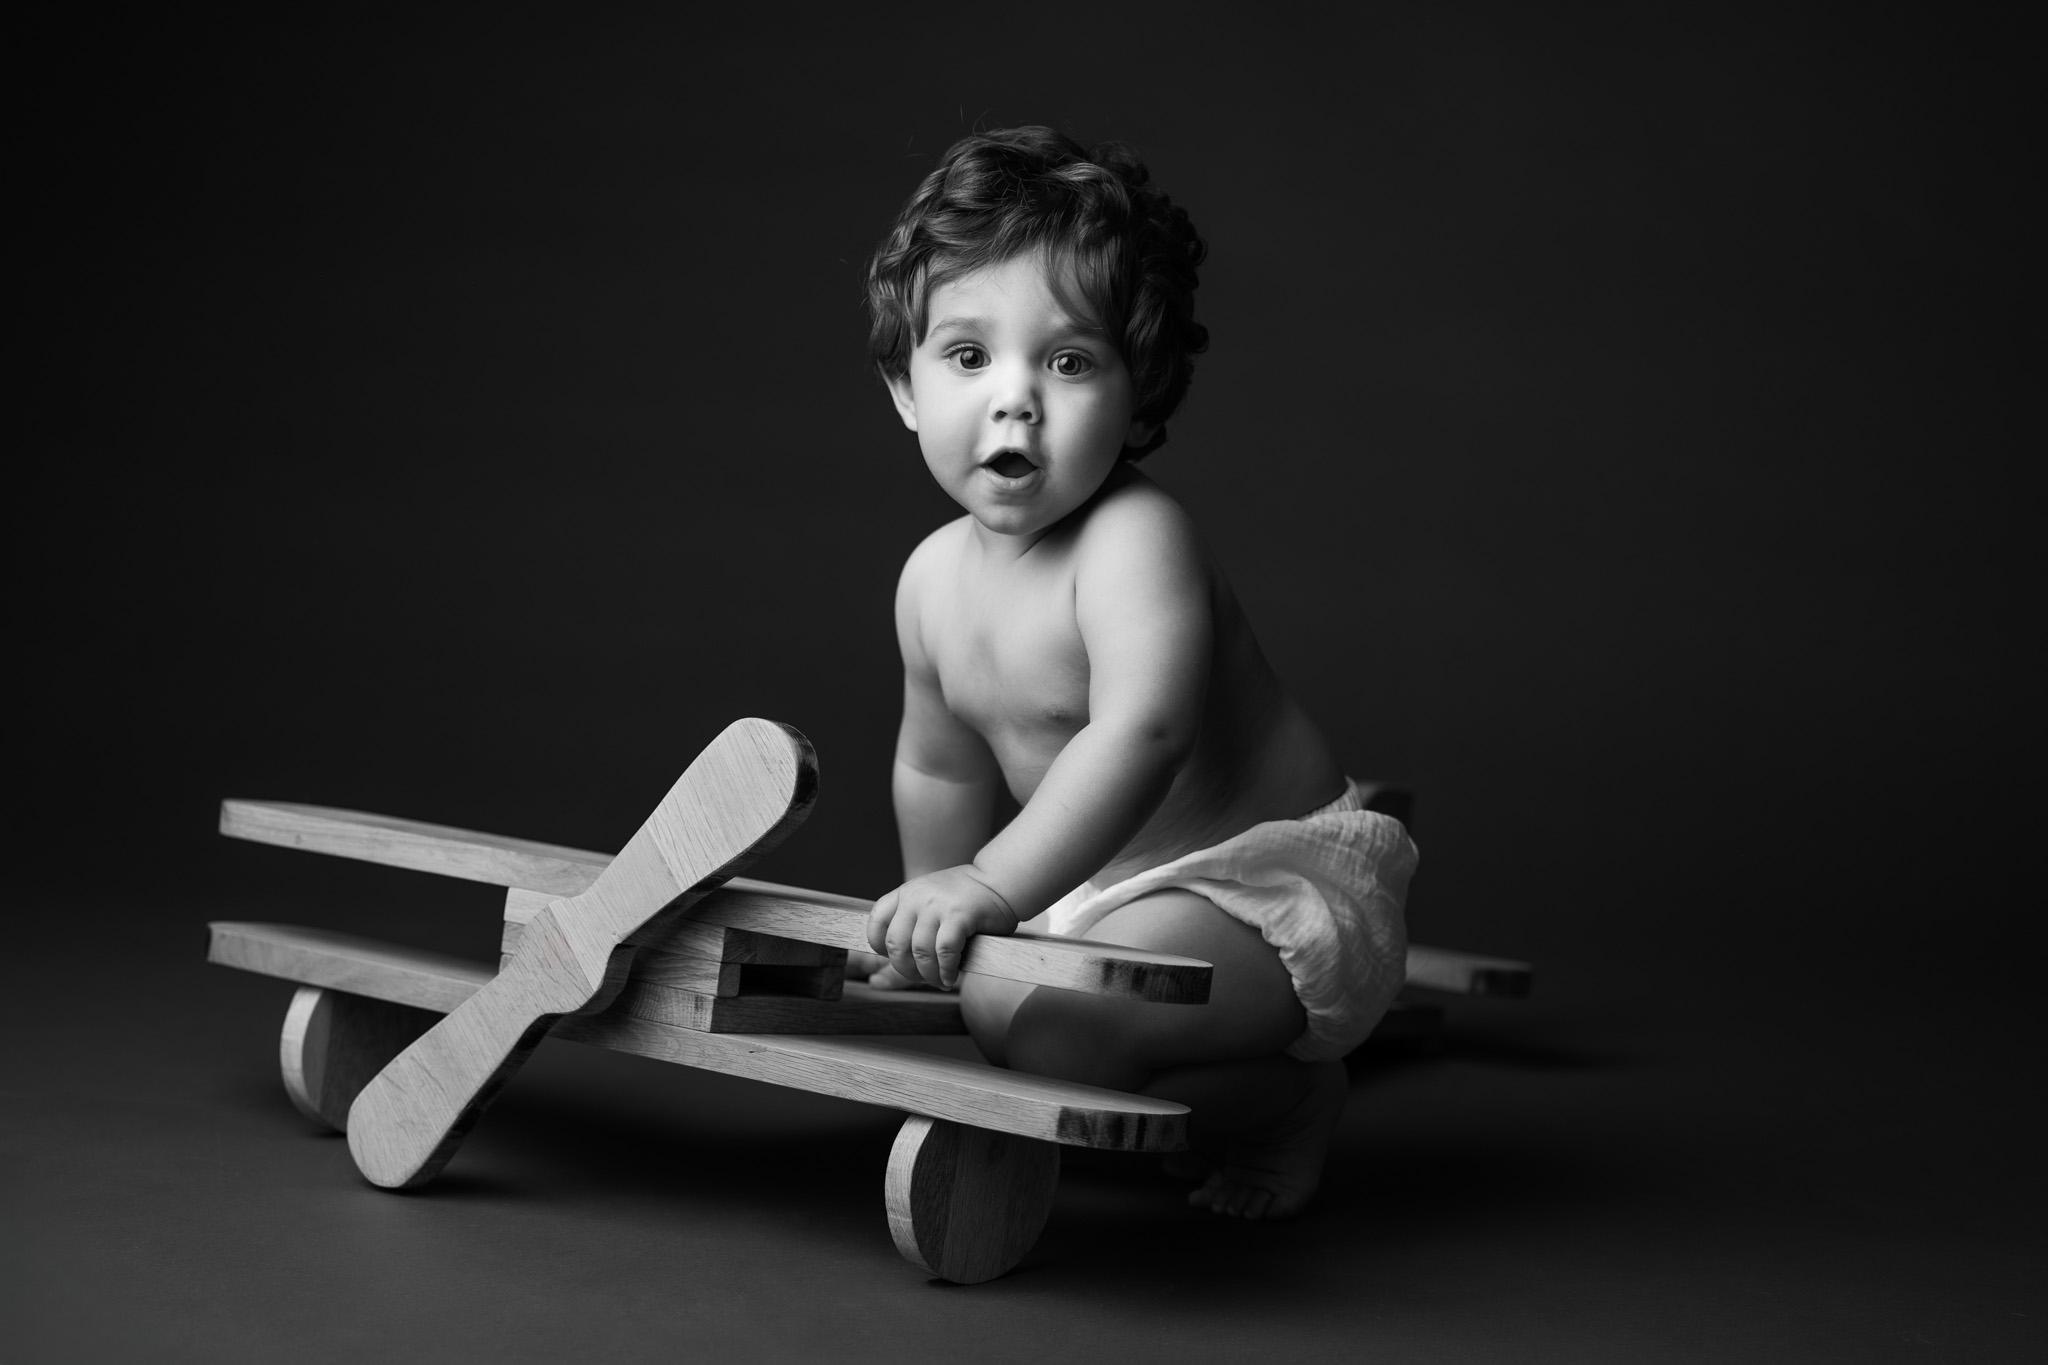 bébé 1 an assis sur son avion en bois